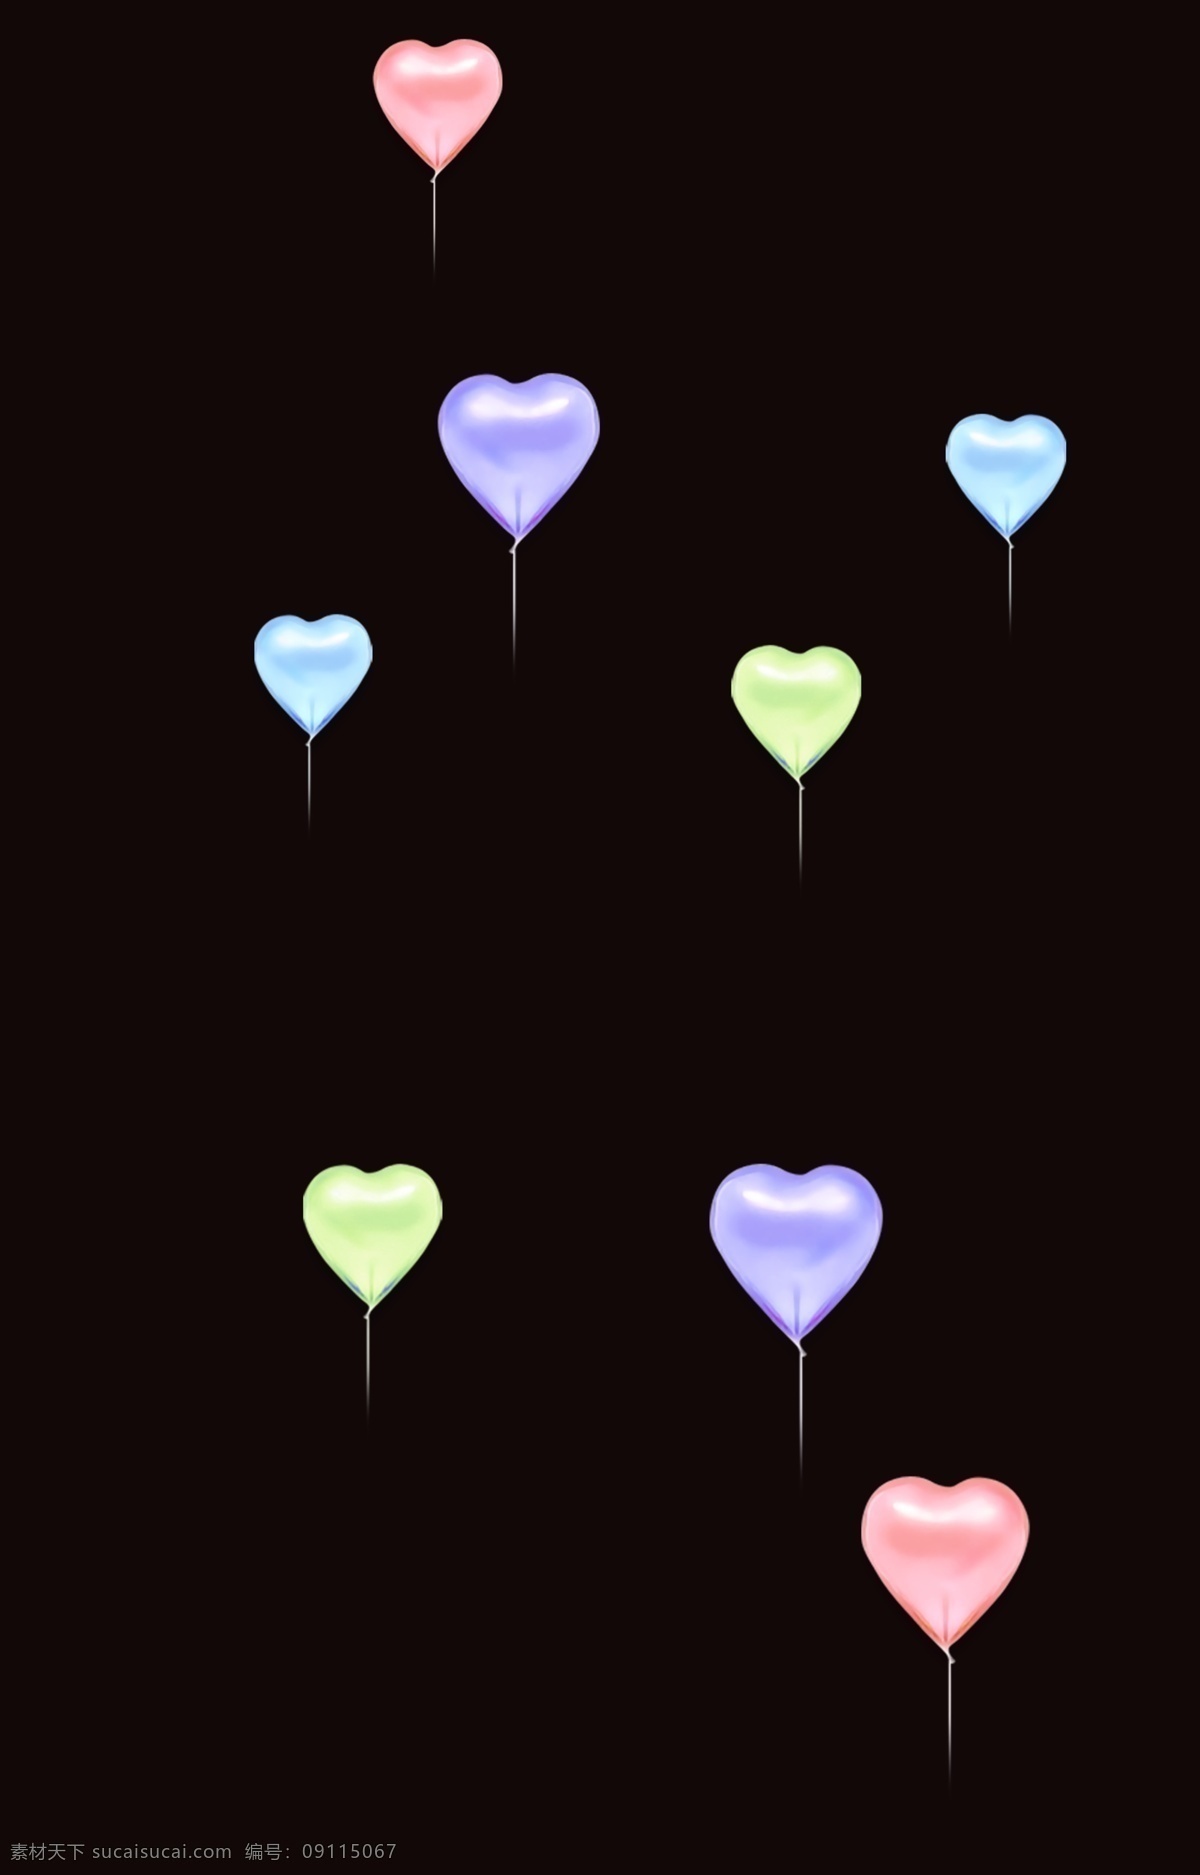 免扣气球 梦幻 心形 心形气球 粉色 背景 浪漫 气球派对 百天派对 彩色气球 气球素材 标识 生活百科 休闲娱乐